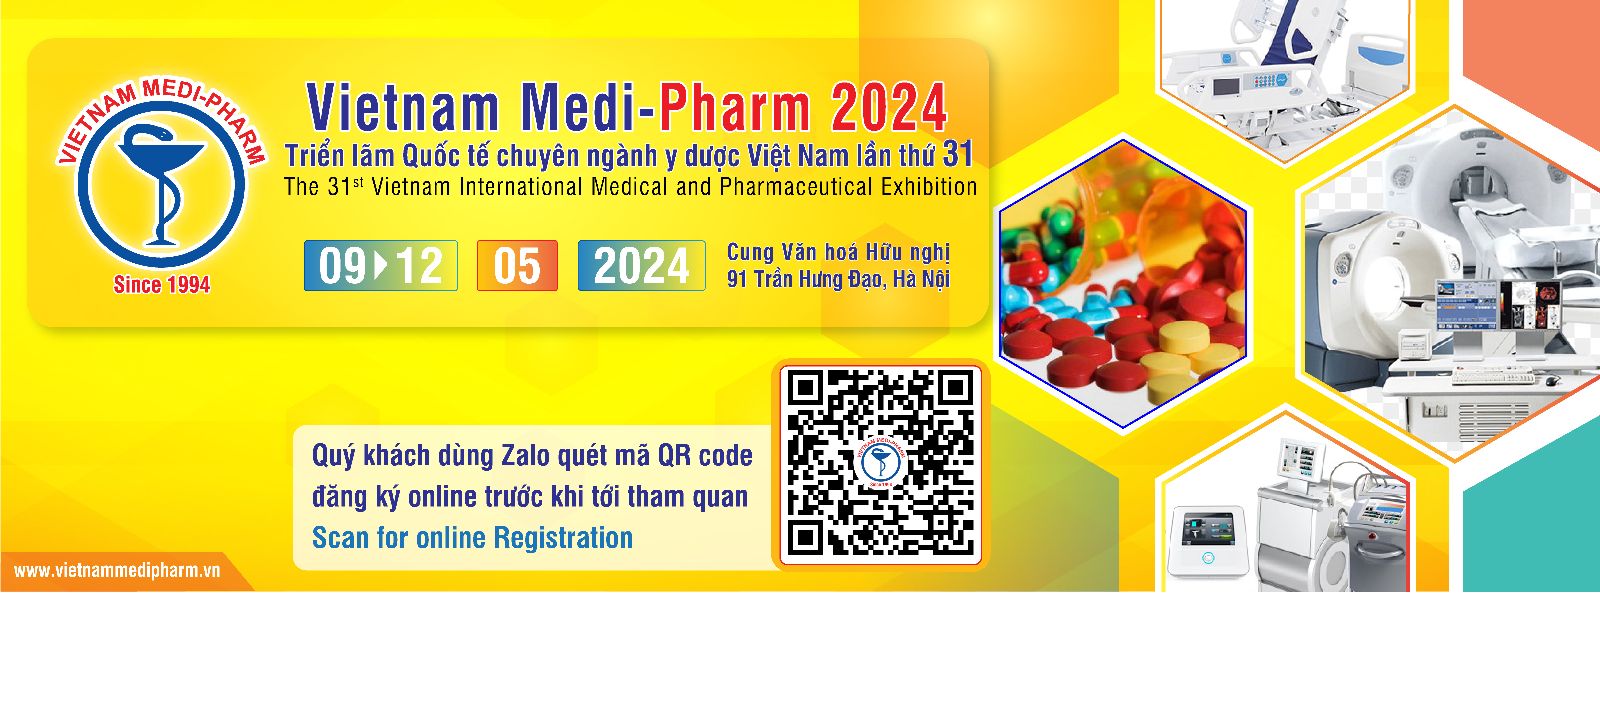 Vietnam Medi-Pharm 2024